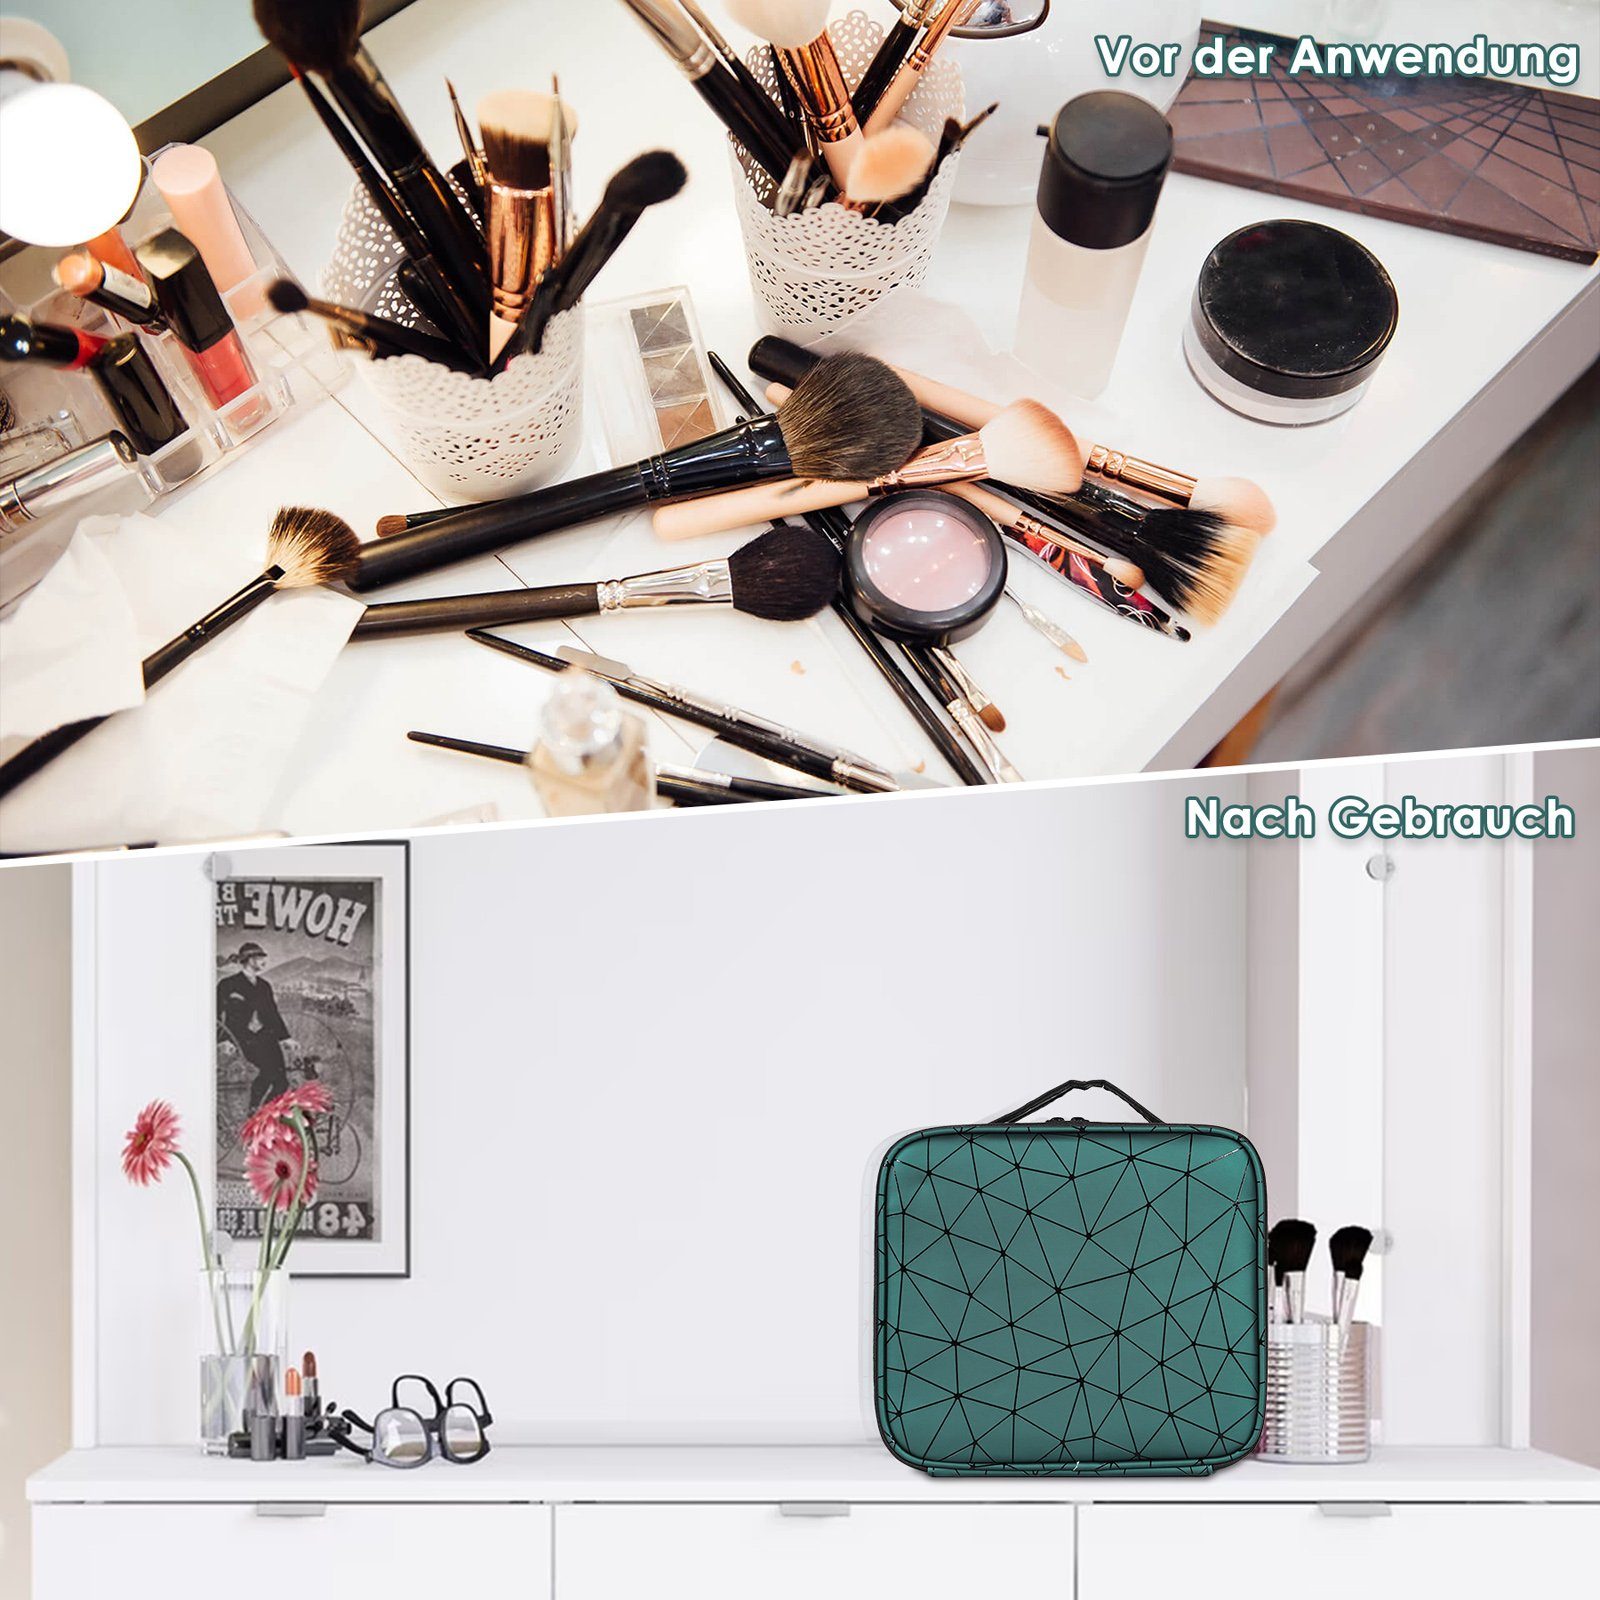 CALIYO Kosmetik-Koffer Makeup Box Kosmetische Grün Aufbewahrung Schmink Up Tasche, Reise 1-tlg., Make Organizer,Kosmetiktasche Tasche Wasserdicht Portable Schminktasche